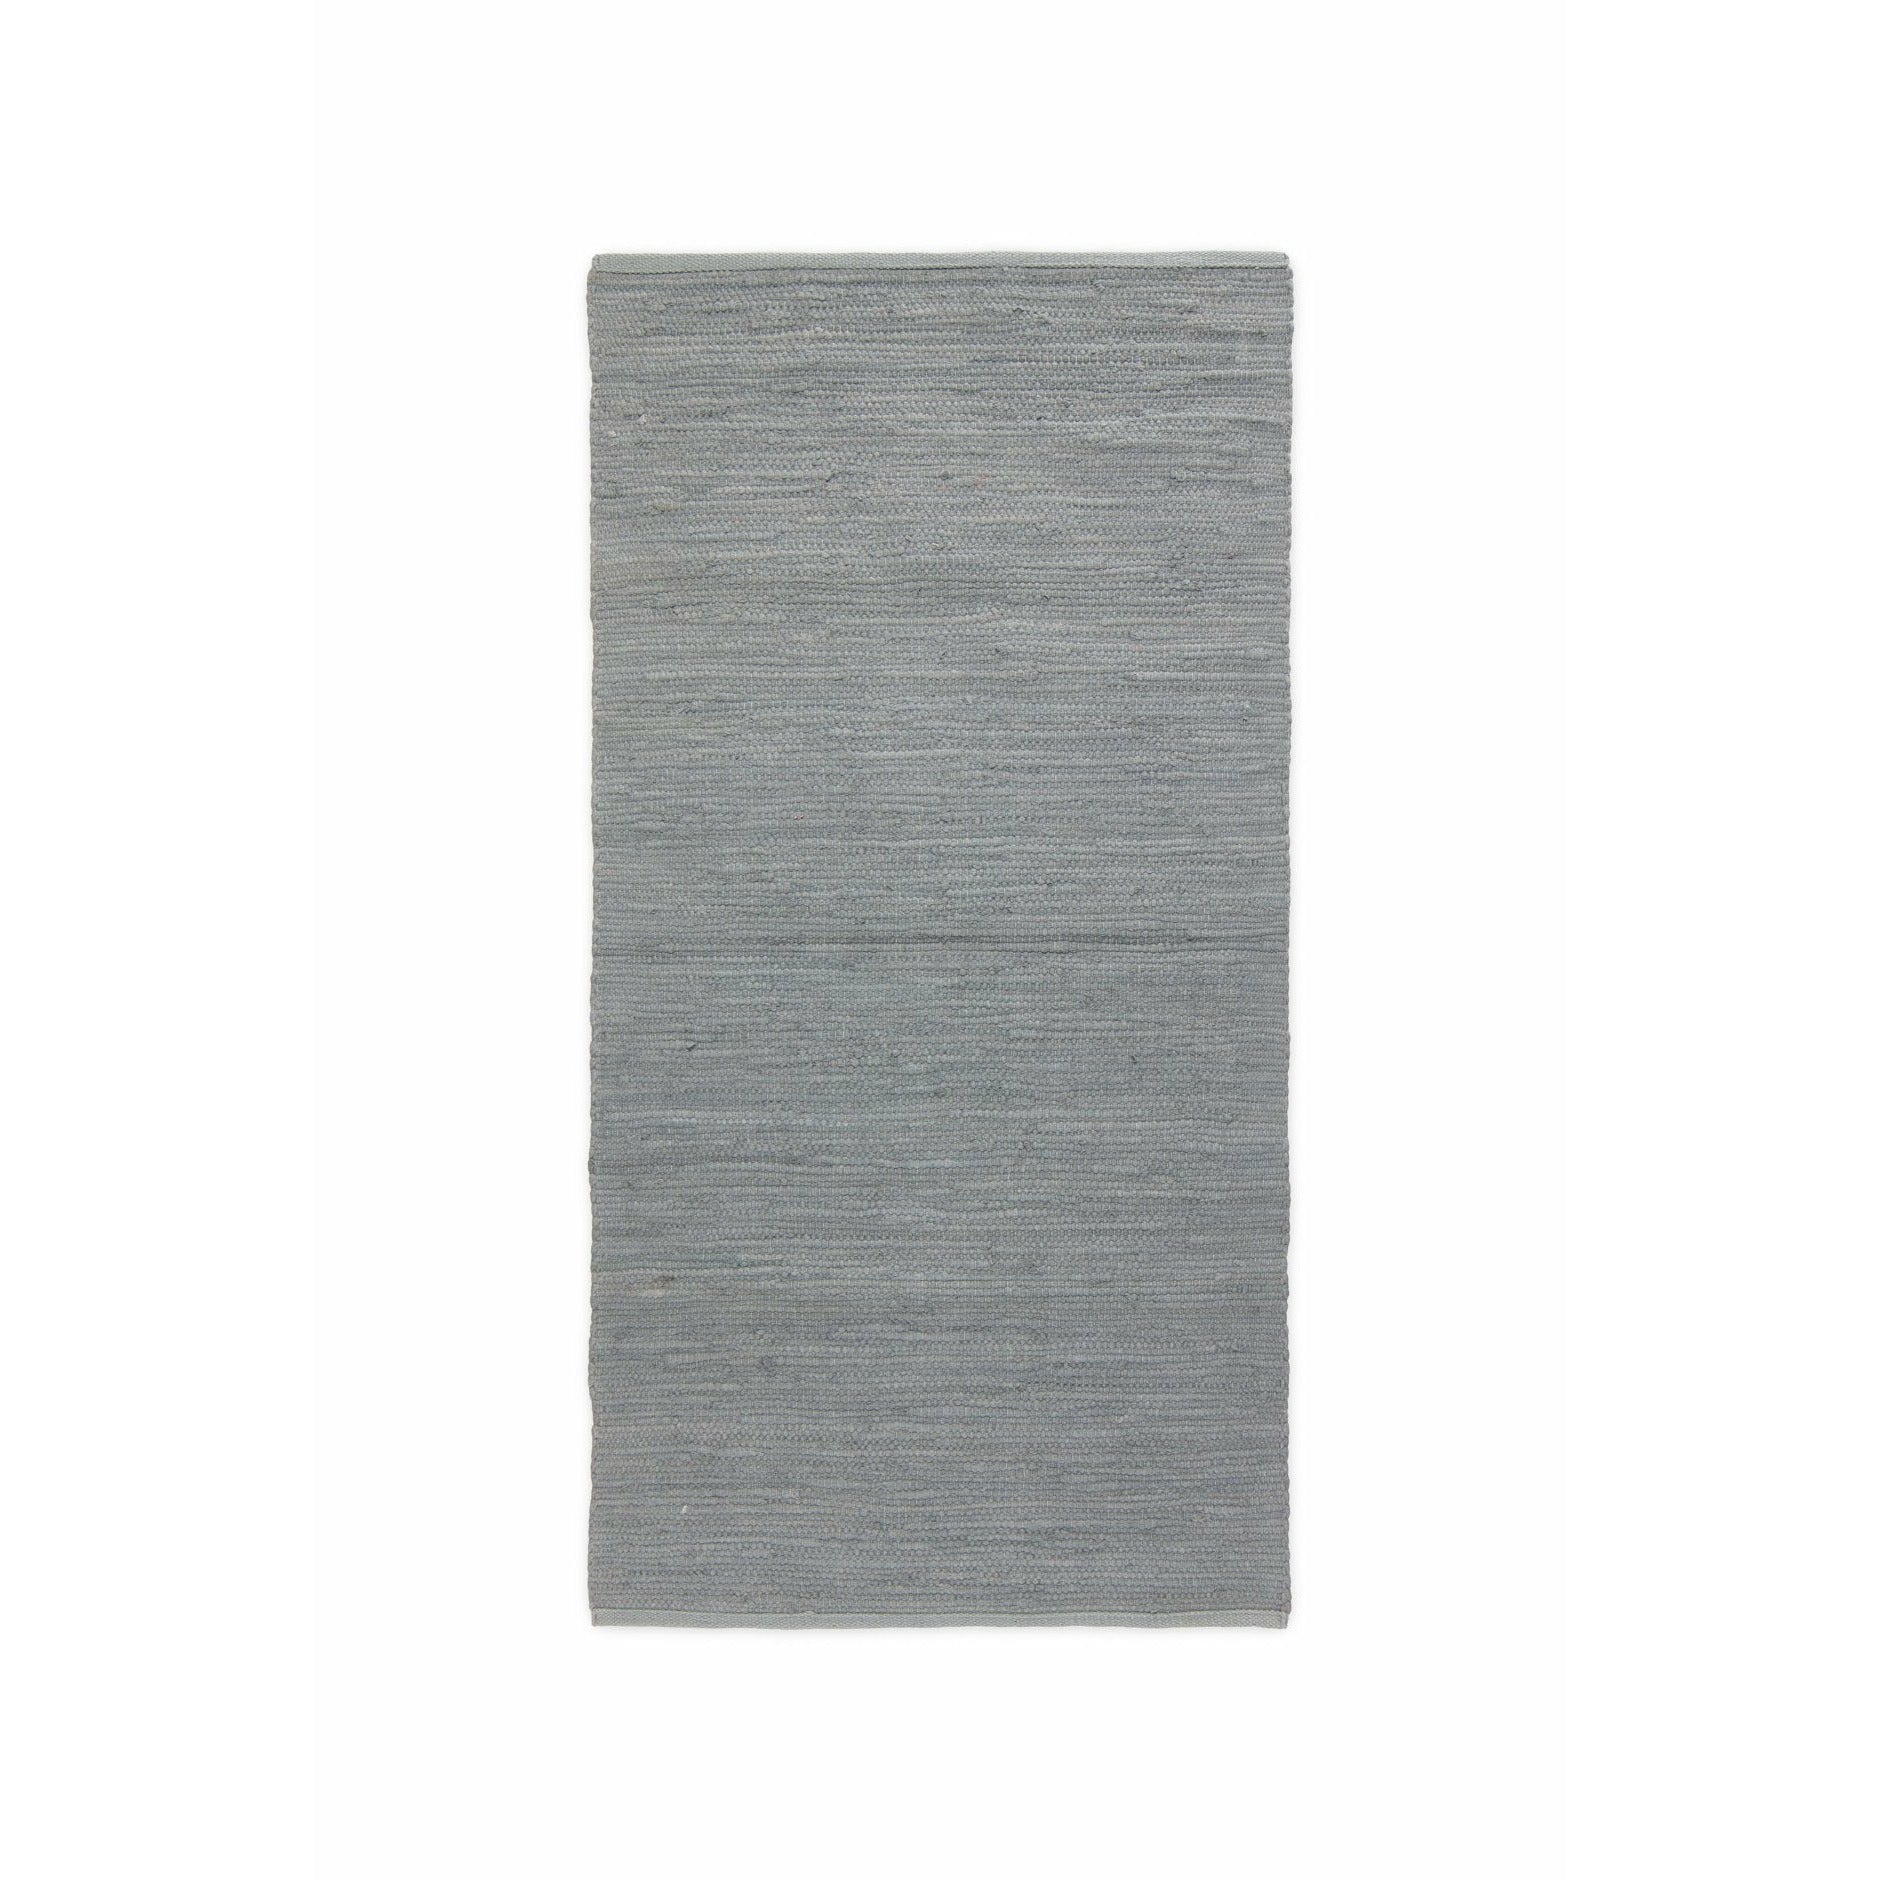 Rug Solid Katoenen tapijt licht grijs, 60 x 90 cm